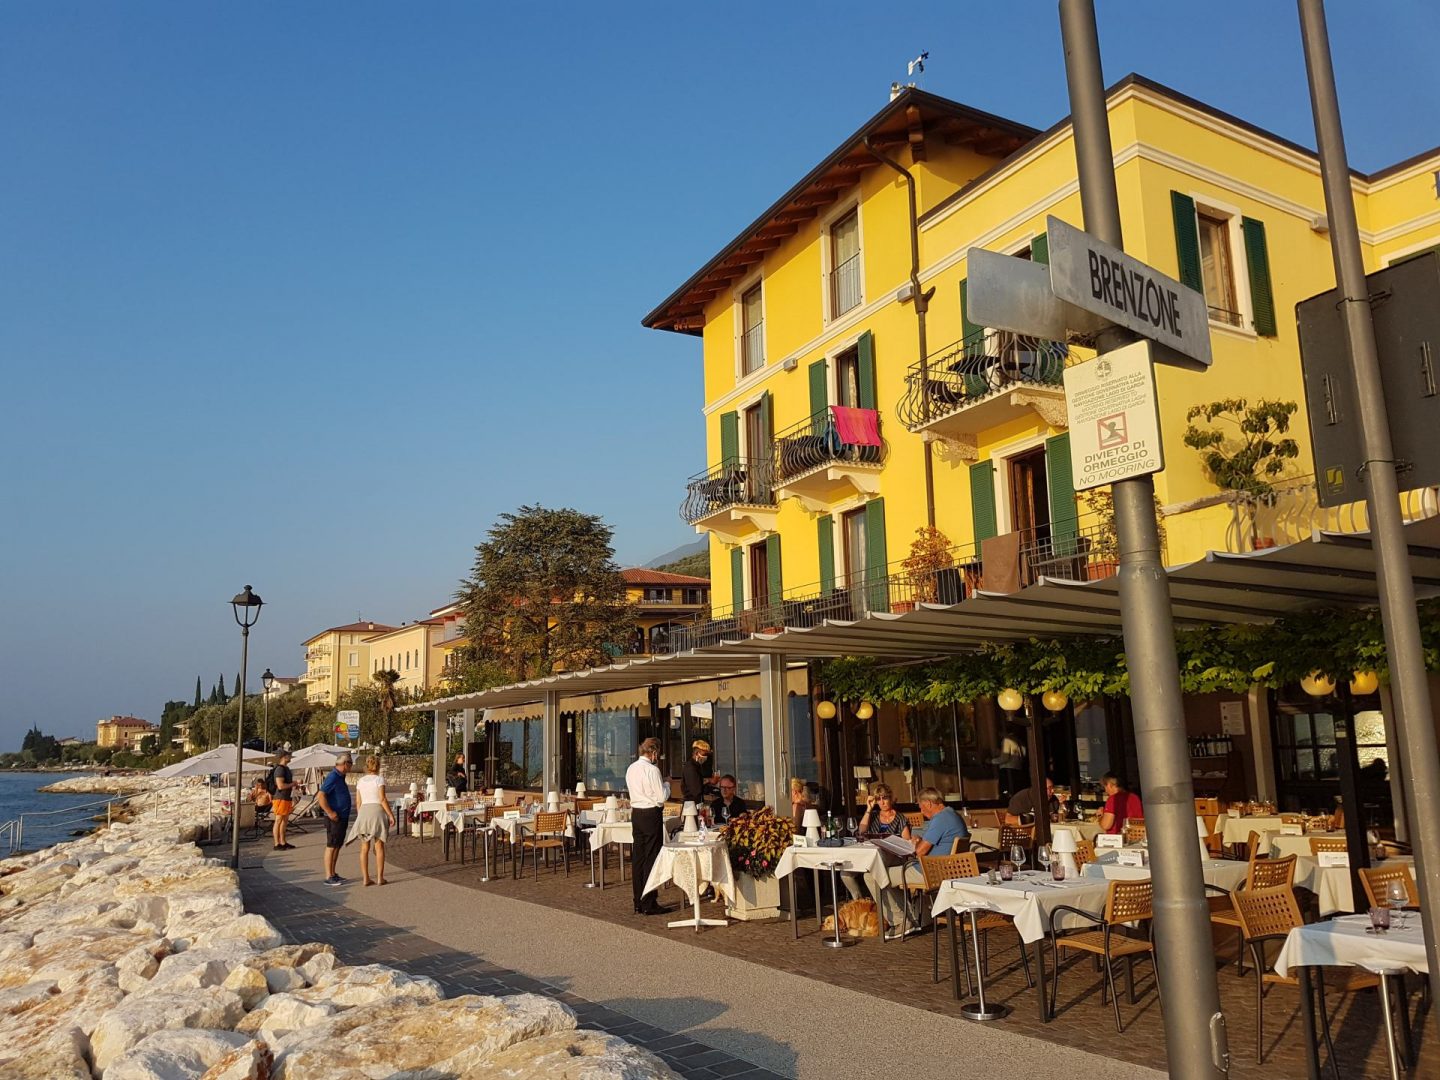 Erfahrung Bewertung Kritik Hotel Brenzone Gardasee Foodblog Sternestulle